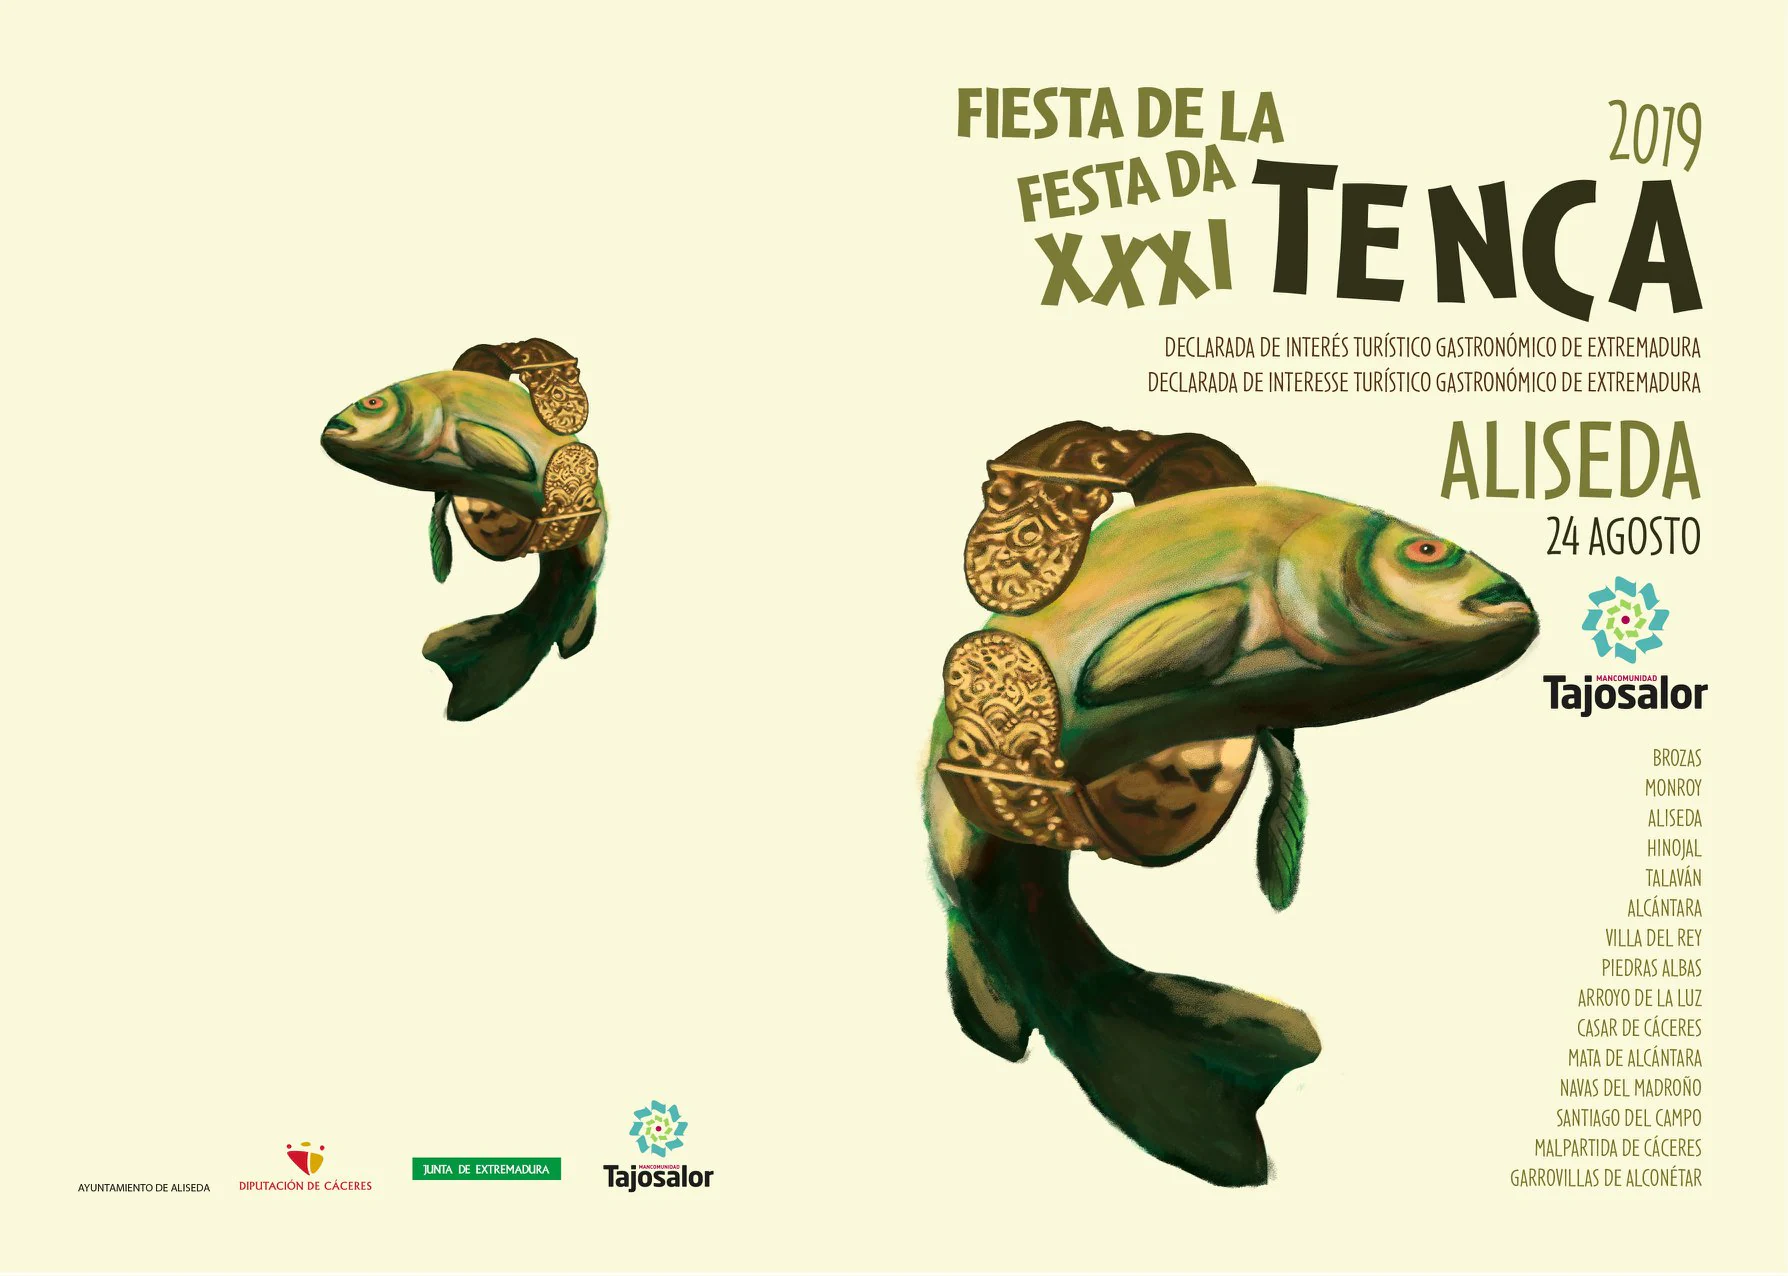 La Fiesta de la tenca será este año en Aliseda del 23 al 25 de agosto